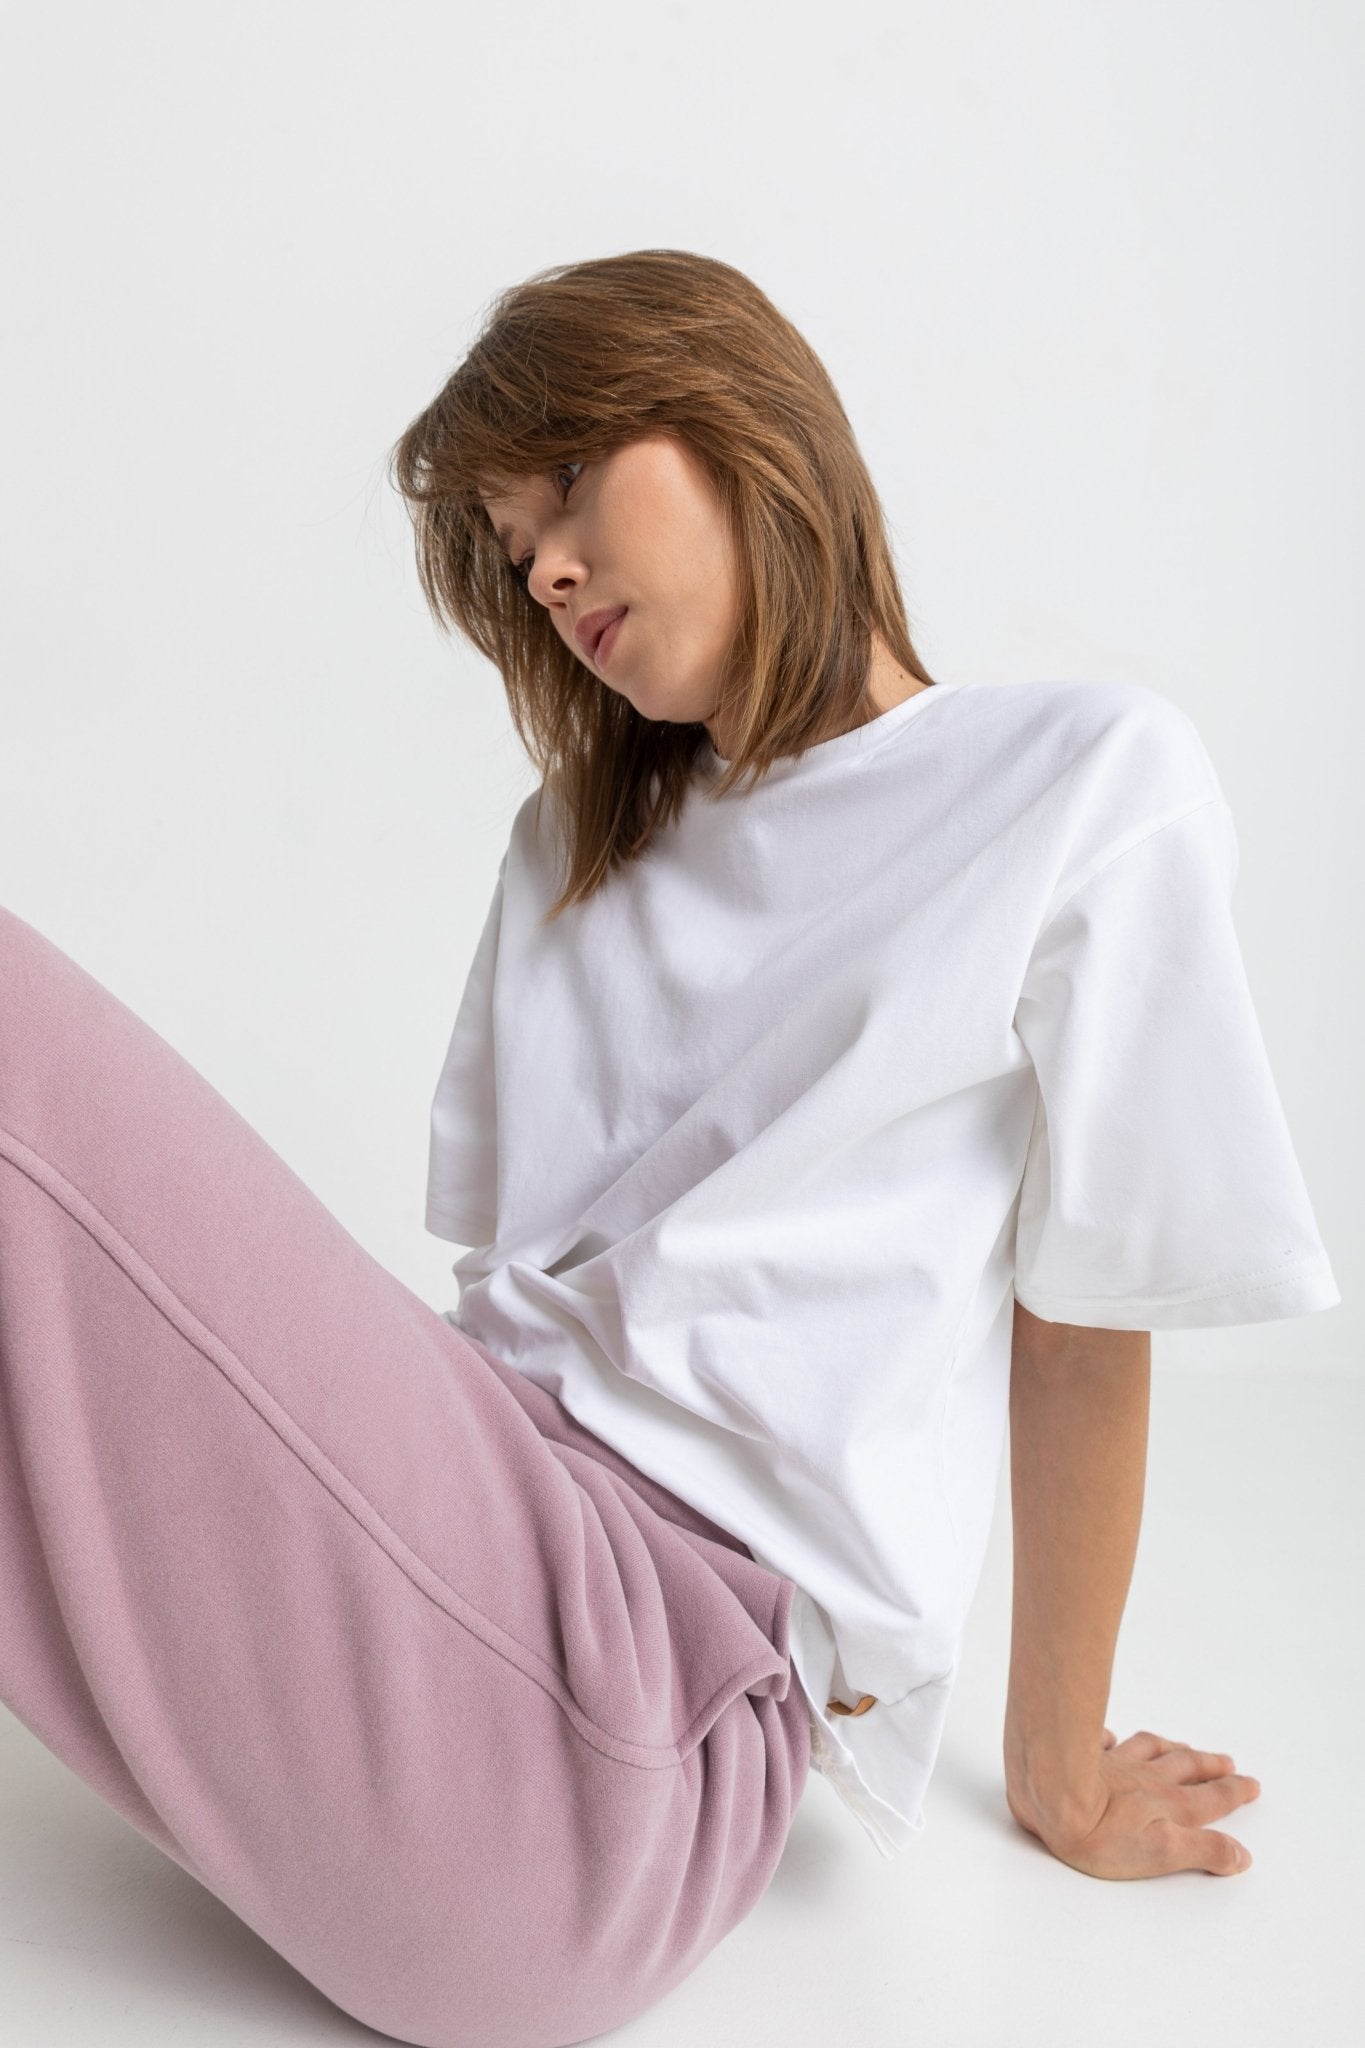 T-shirt OVERSIZE damski z bawełny organicznej - Chiara Wear